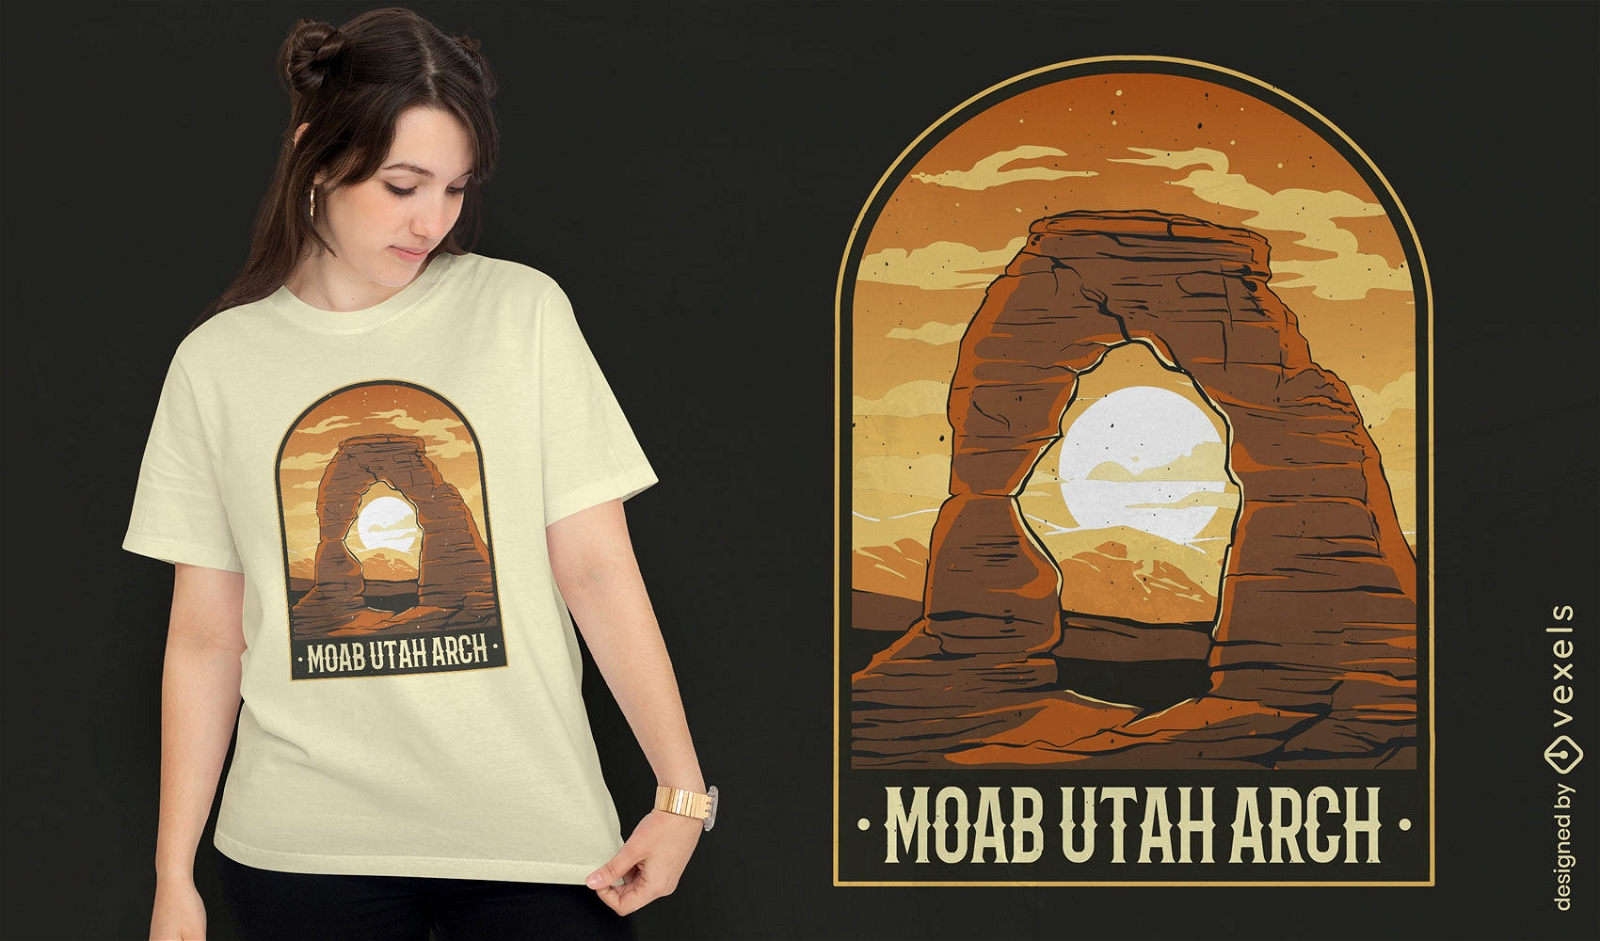 Rock arch landscape t-shirt design